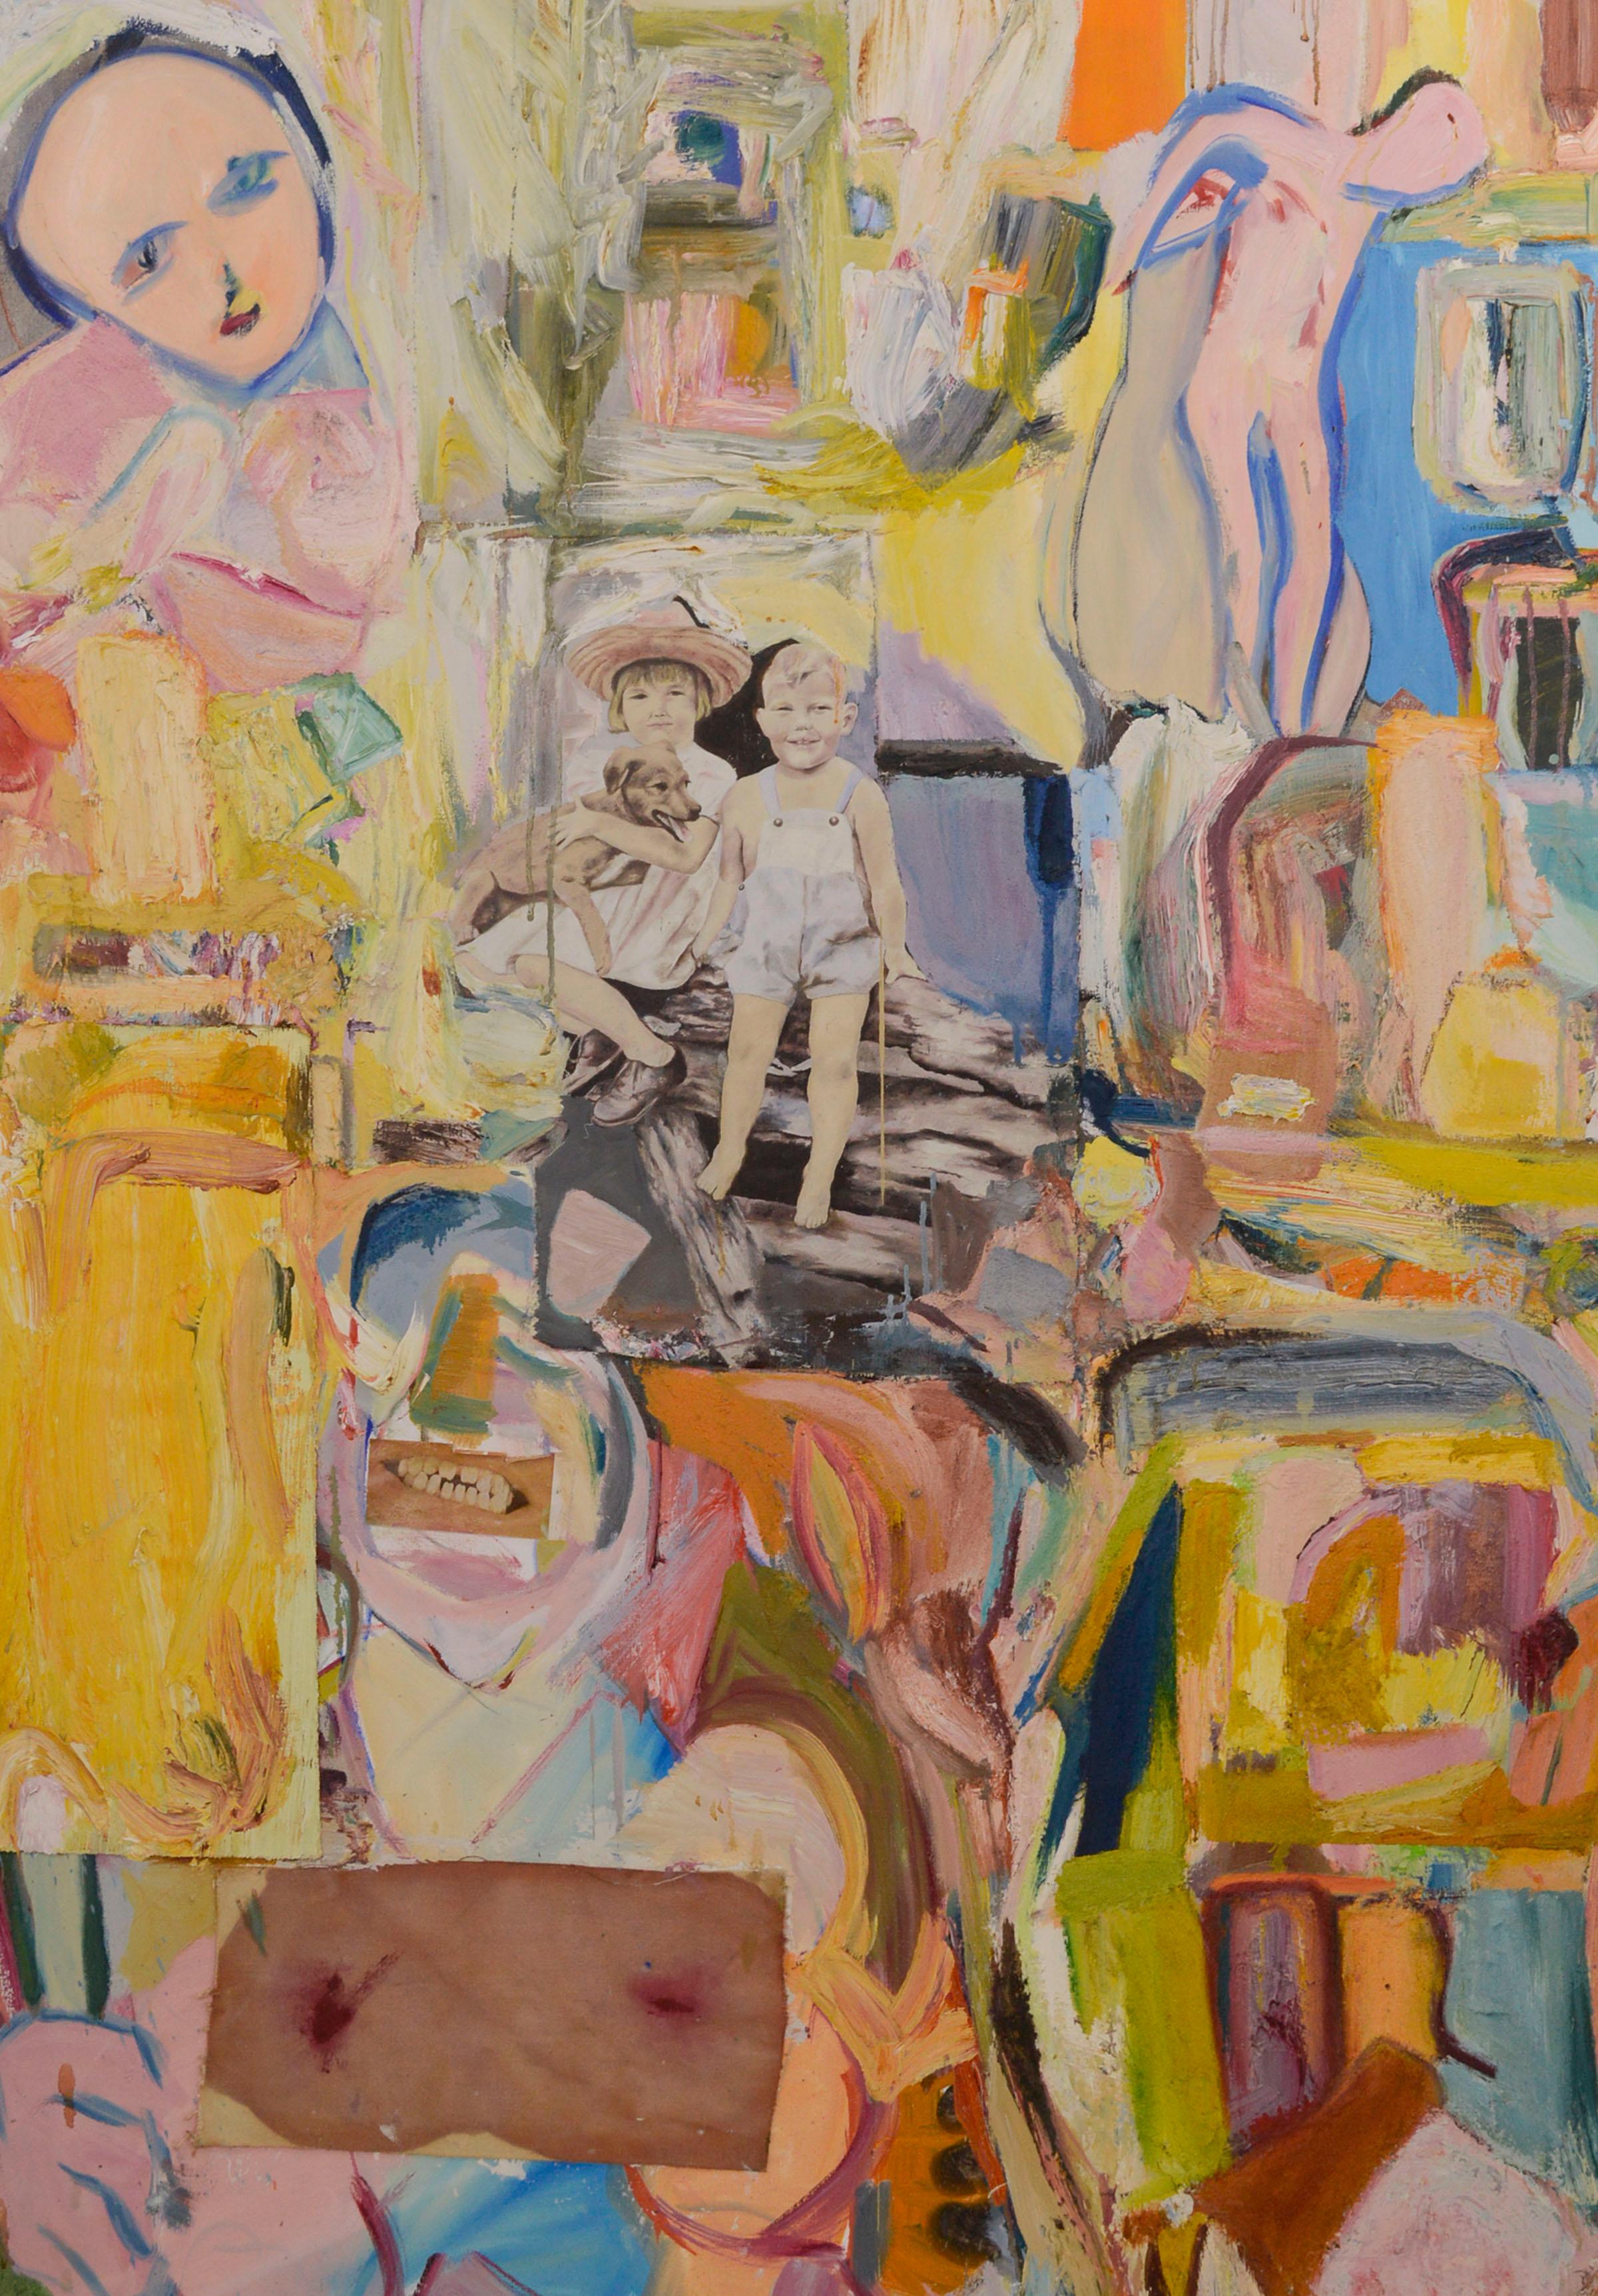 Rosa abstrakt-expressionistische Figurative Komposition mit Collage, großformatig, zeitgenössisch – Painting von Michael Pauker 